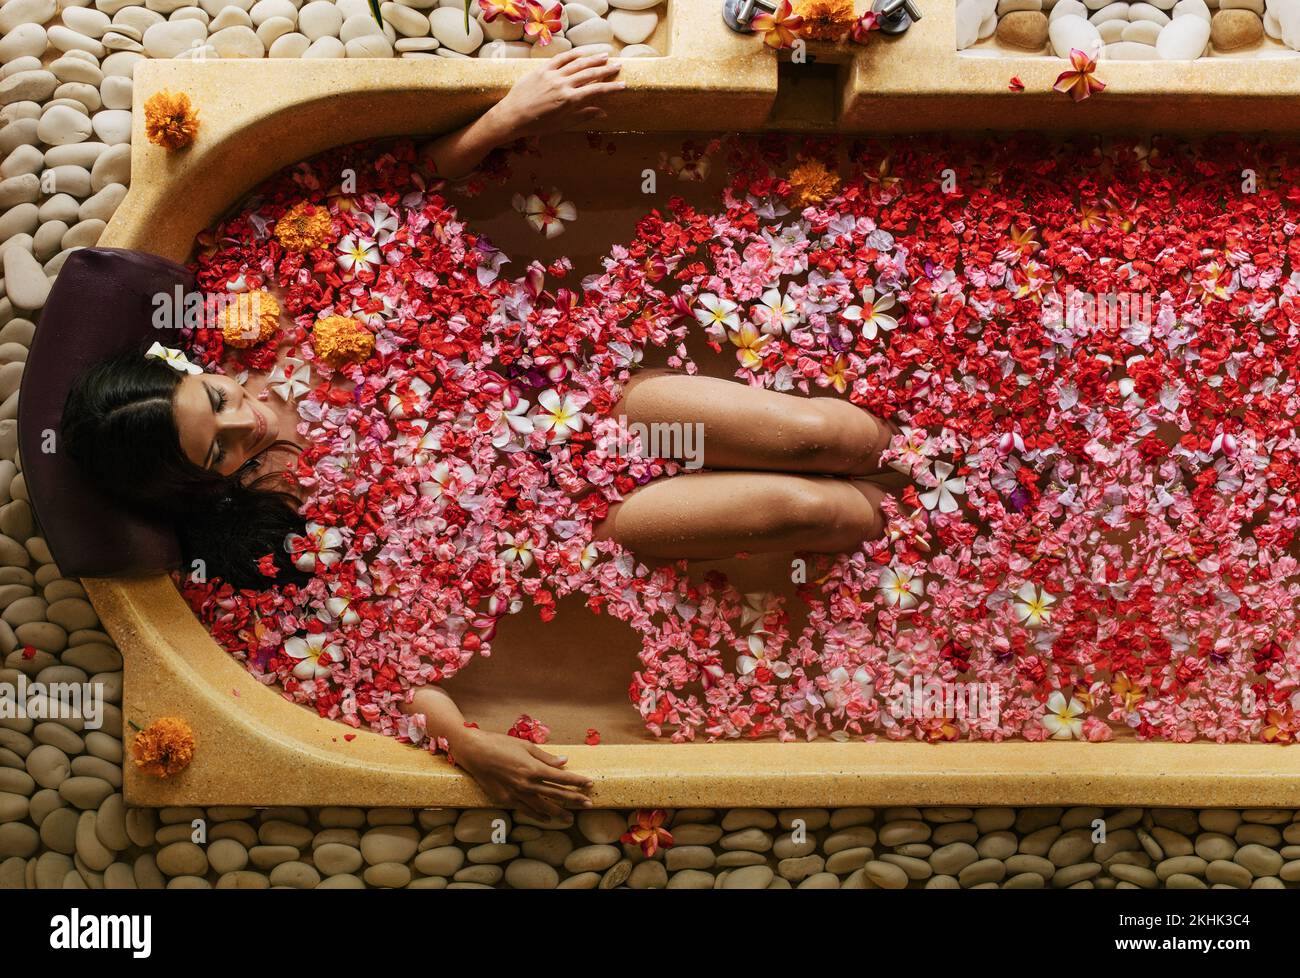 Vista superior de mujer joven tumbada en bañera con pétalos de flores. Mujer que tiene un baño de flores en el spa. Foto de stock